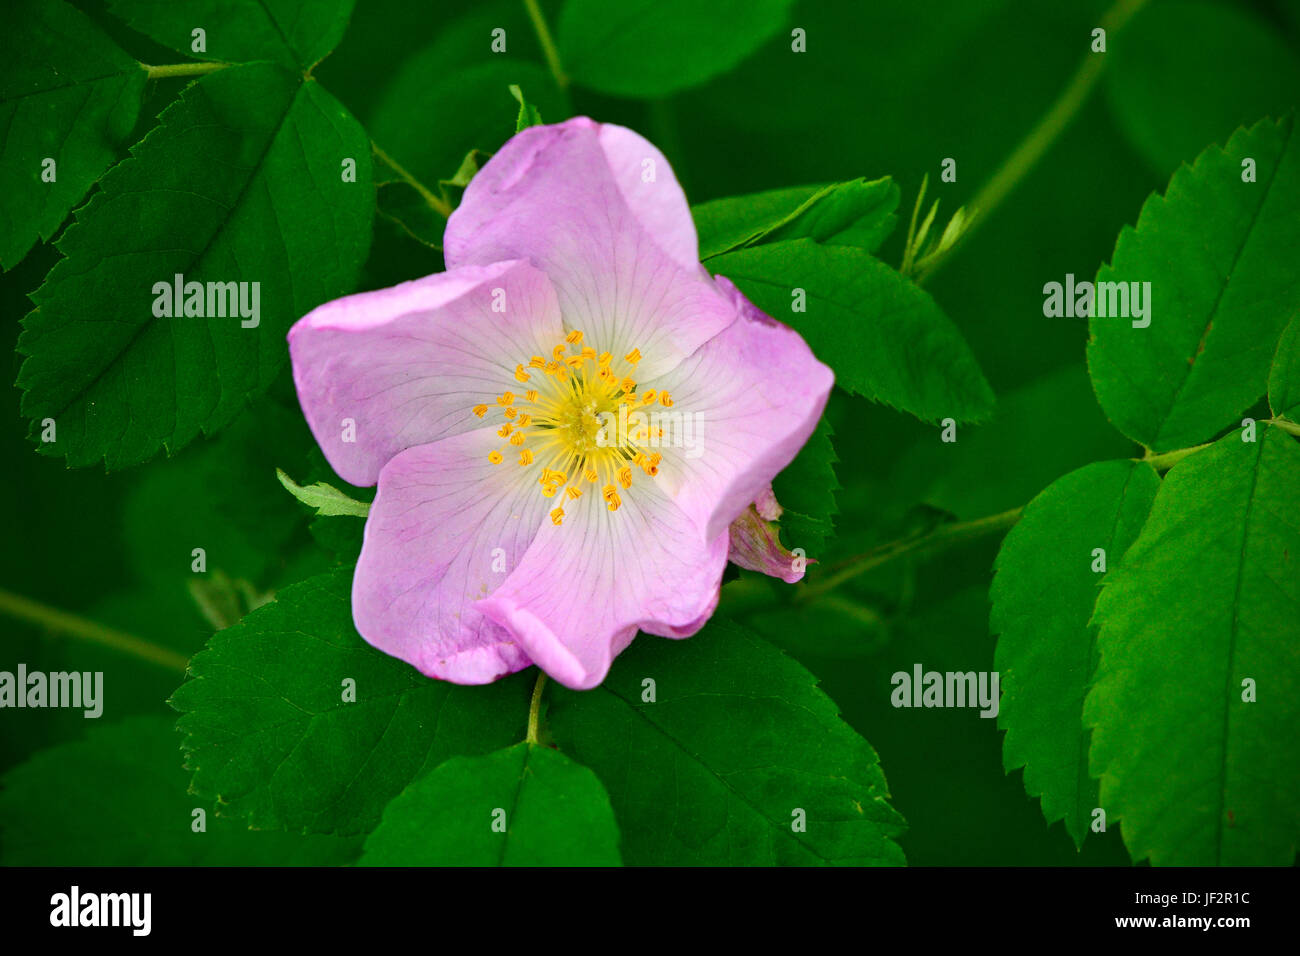 Un rosier sauvage Alberta (Rosa acicularis), l'emblème floral officiel de la province de l'Alberta, Canada. Banque D'Images